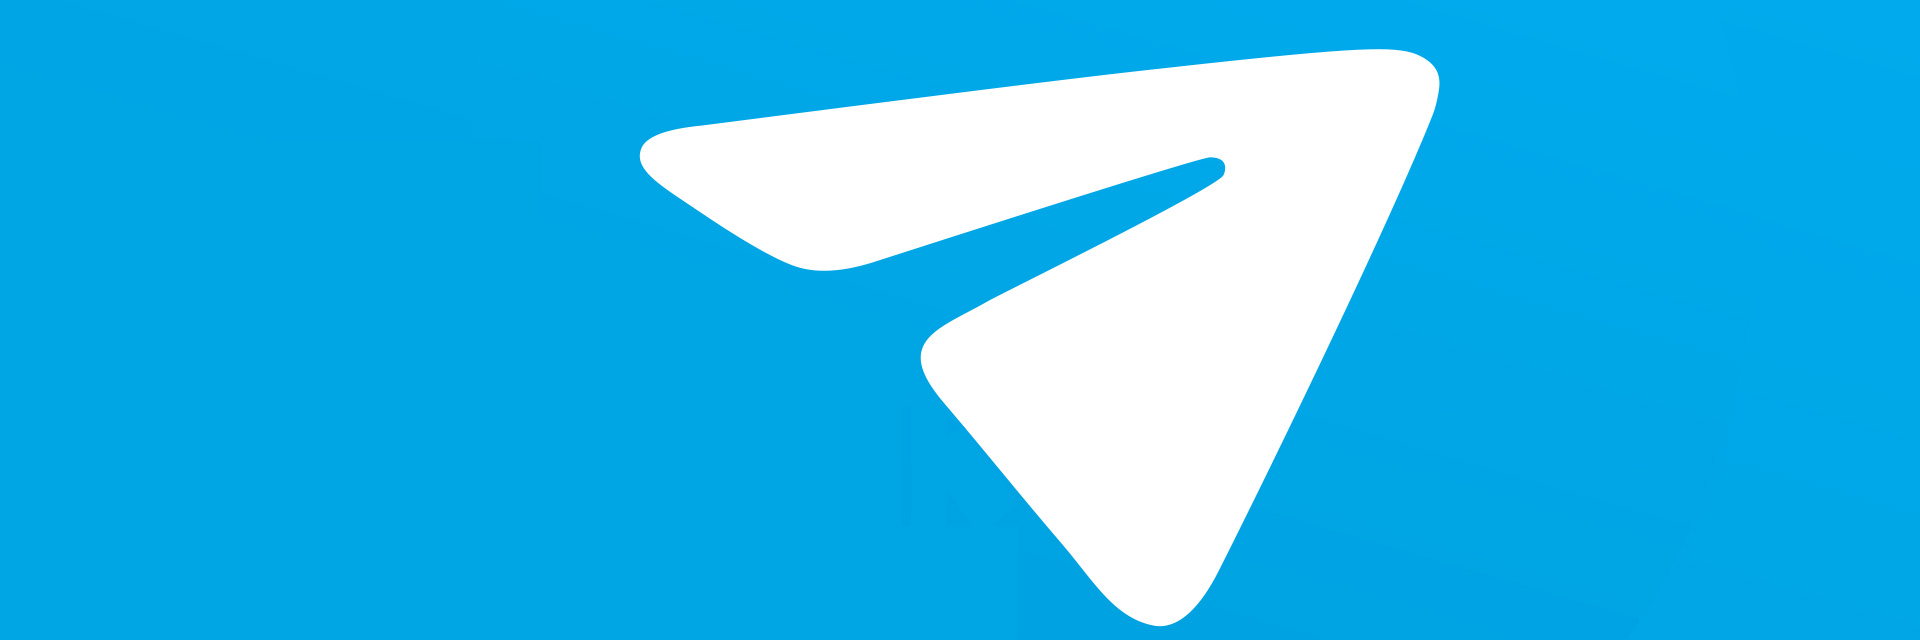 Стартовал новый конкурс в telegram для android